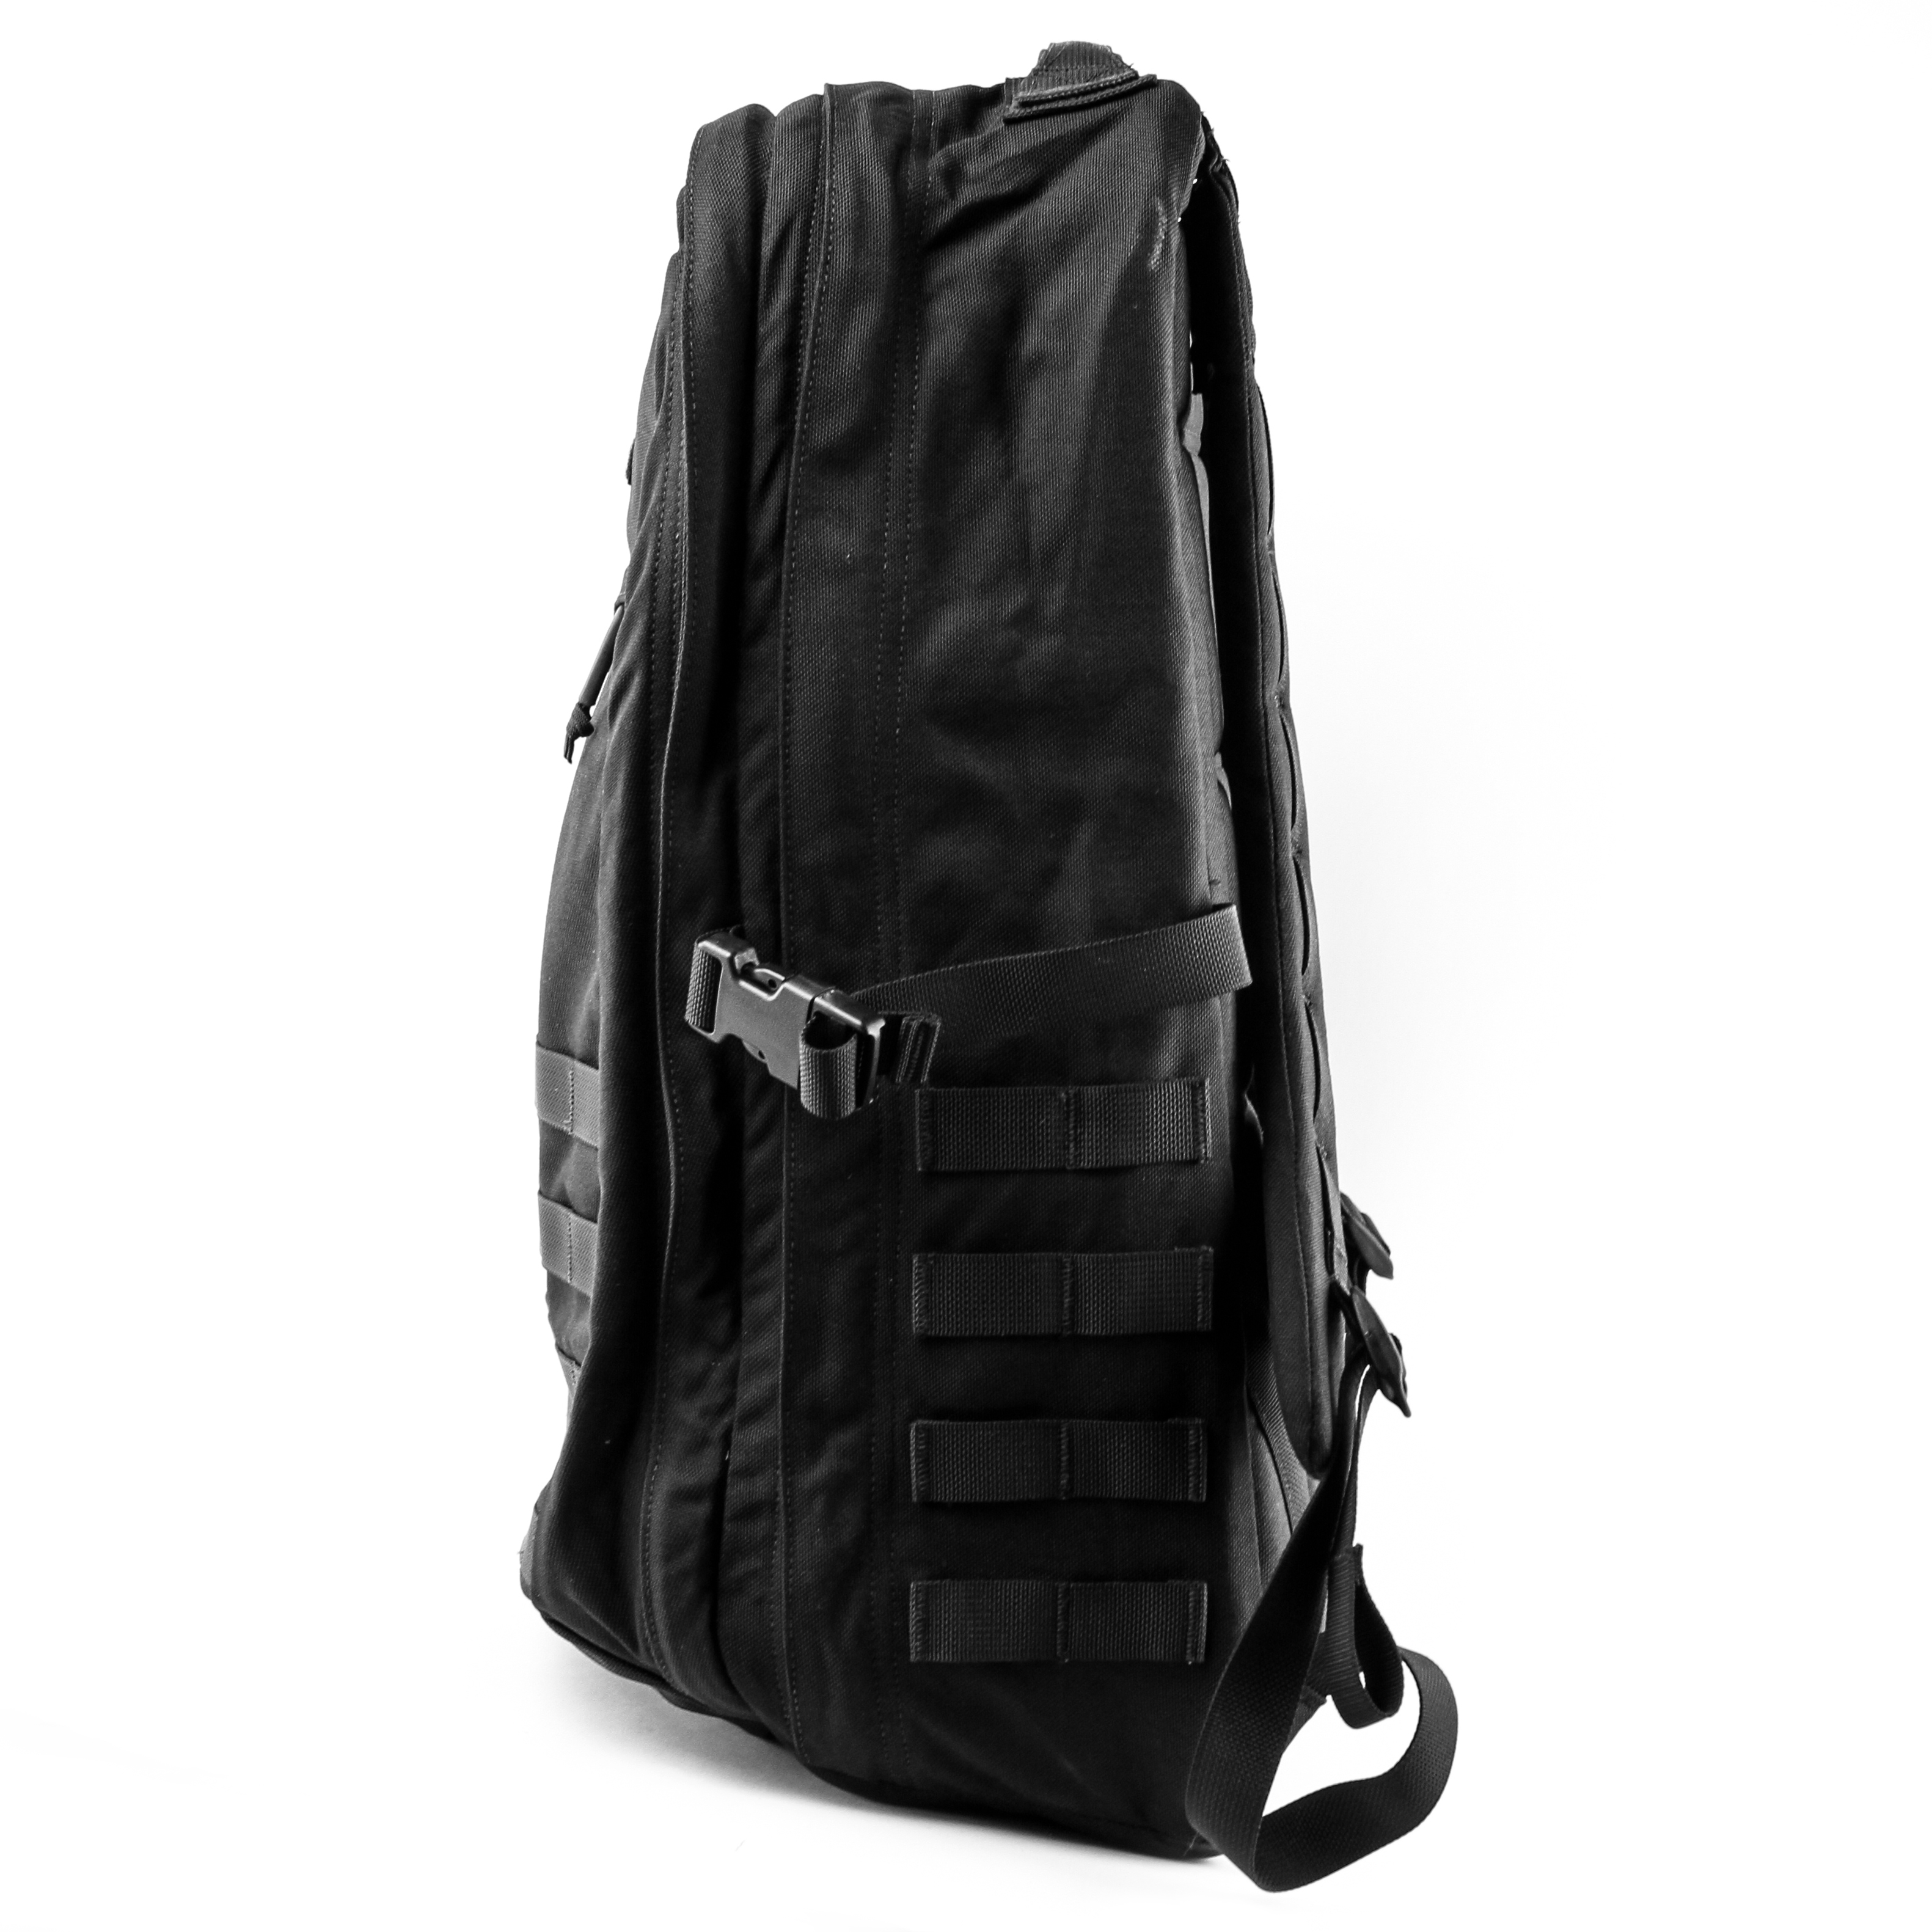 GORUCK GR2 Backpack - 40L - Black | undefined | Huckberry